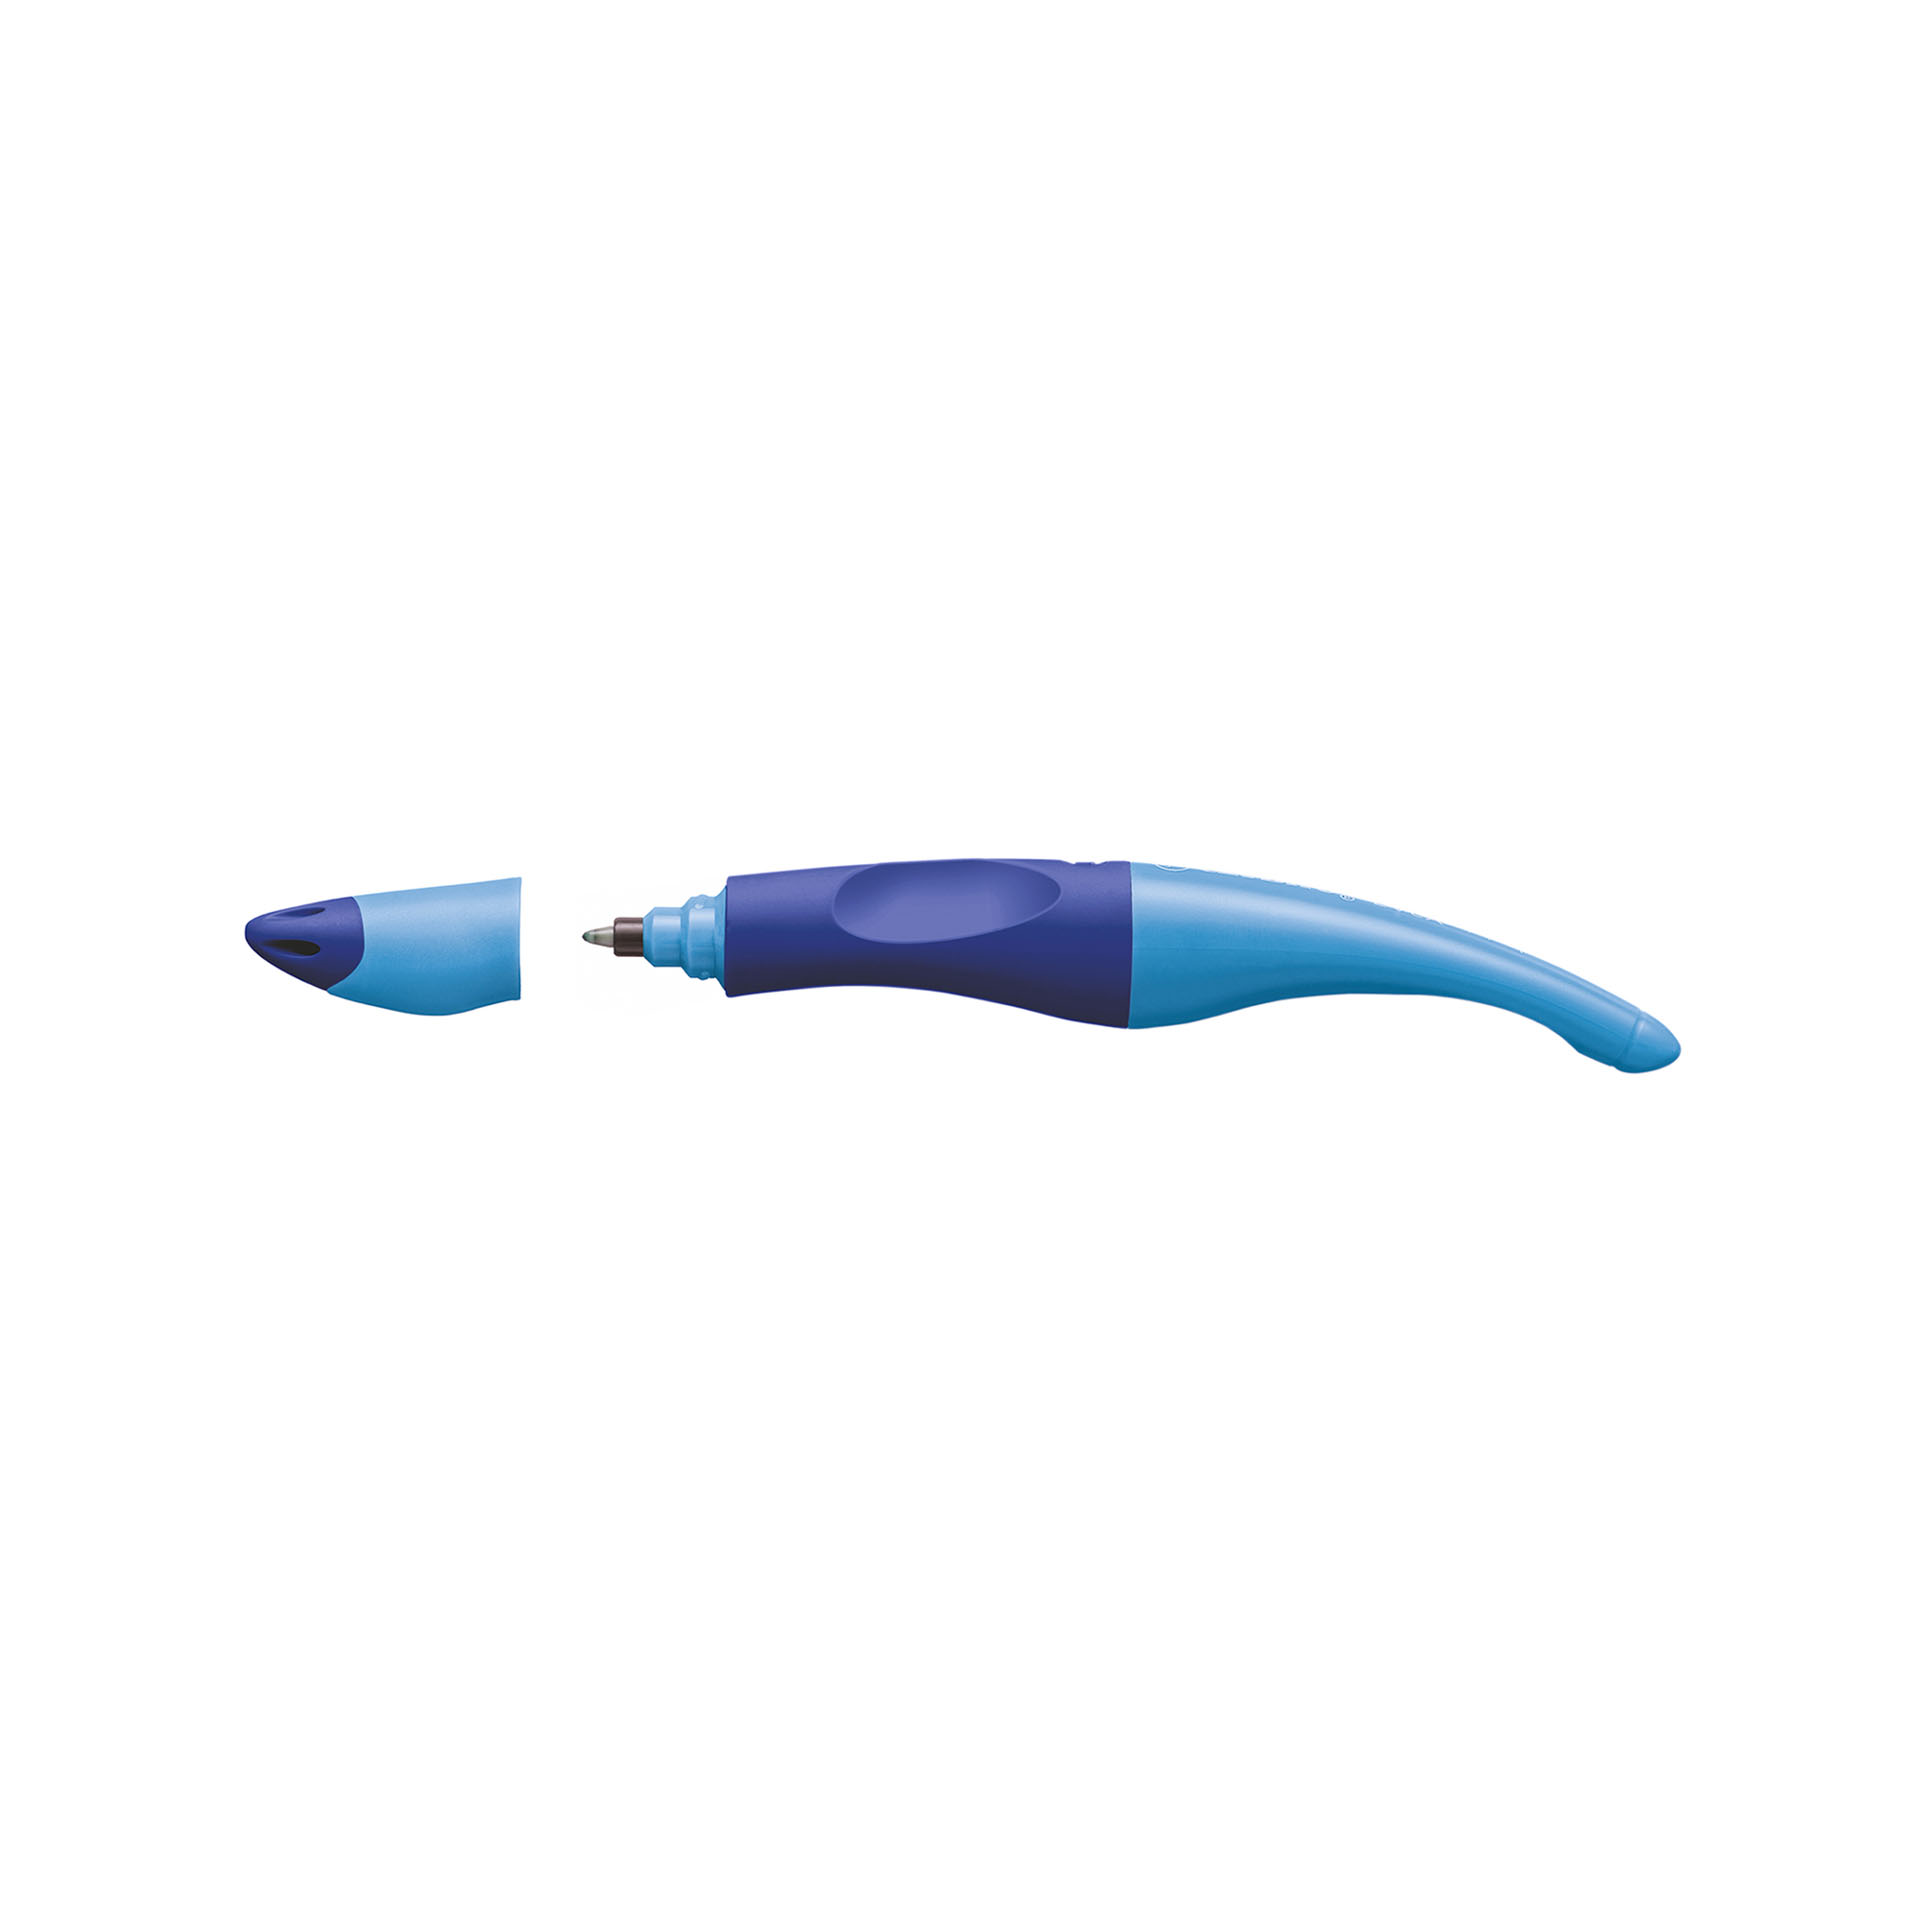 Penna Roller Ergonomica - Stabilo Easyoriginal Per Mancini In Blu/azzurro - Cartuccia Blu Inclusa, , large